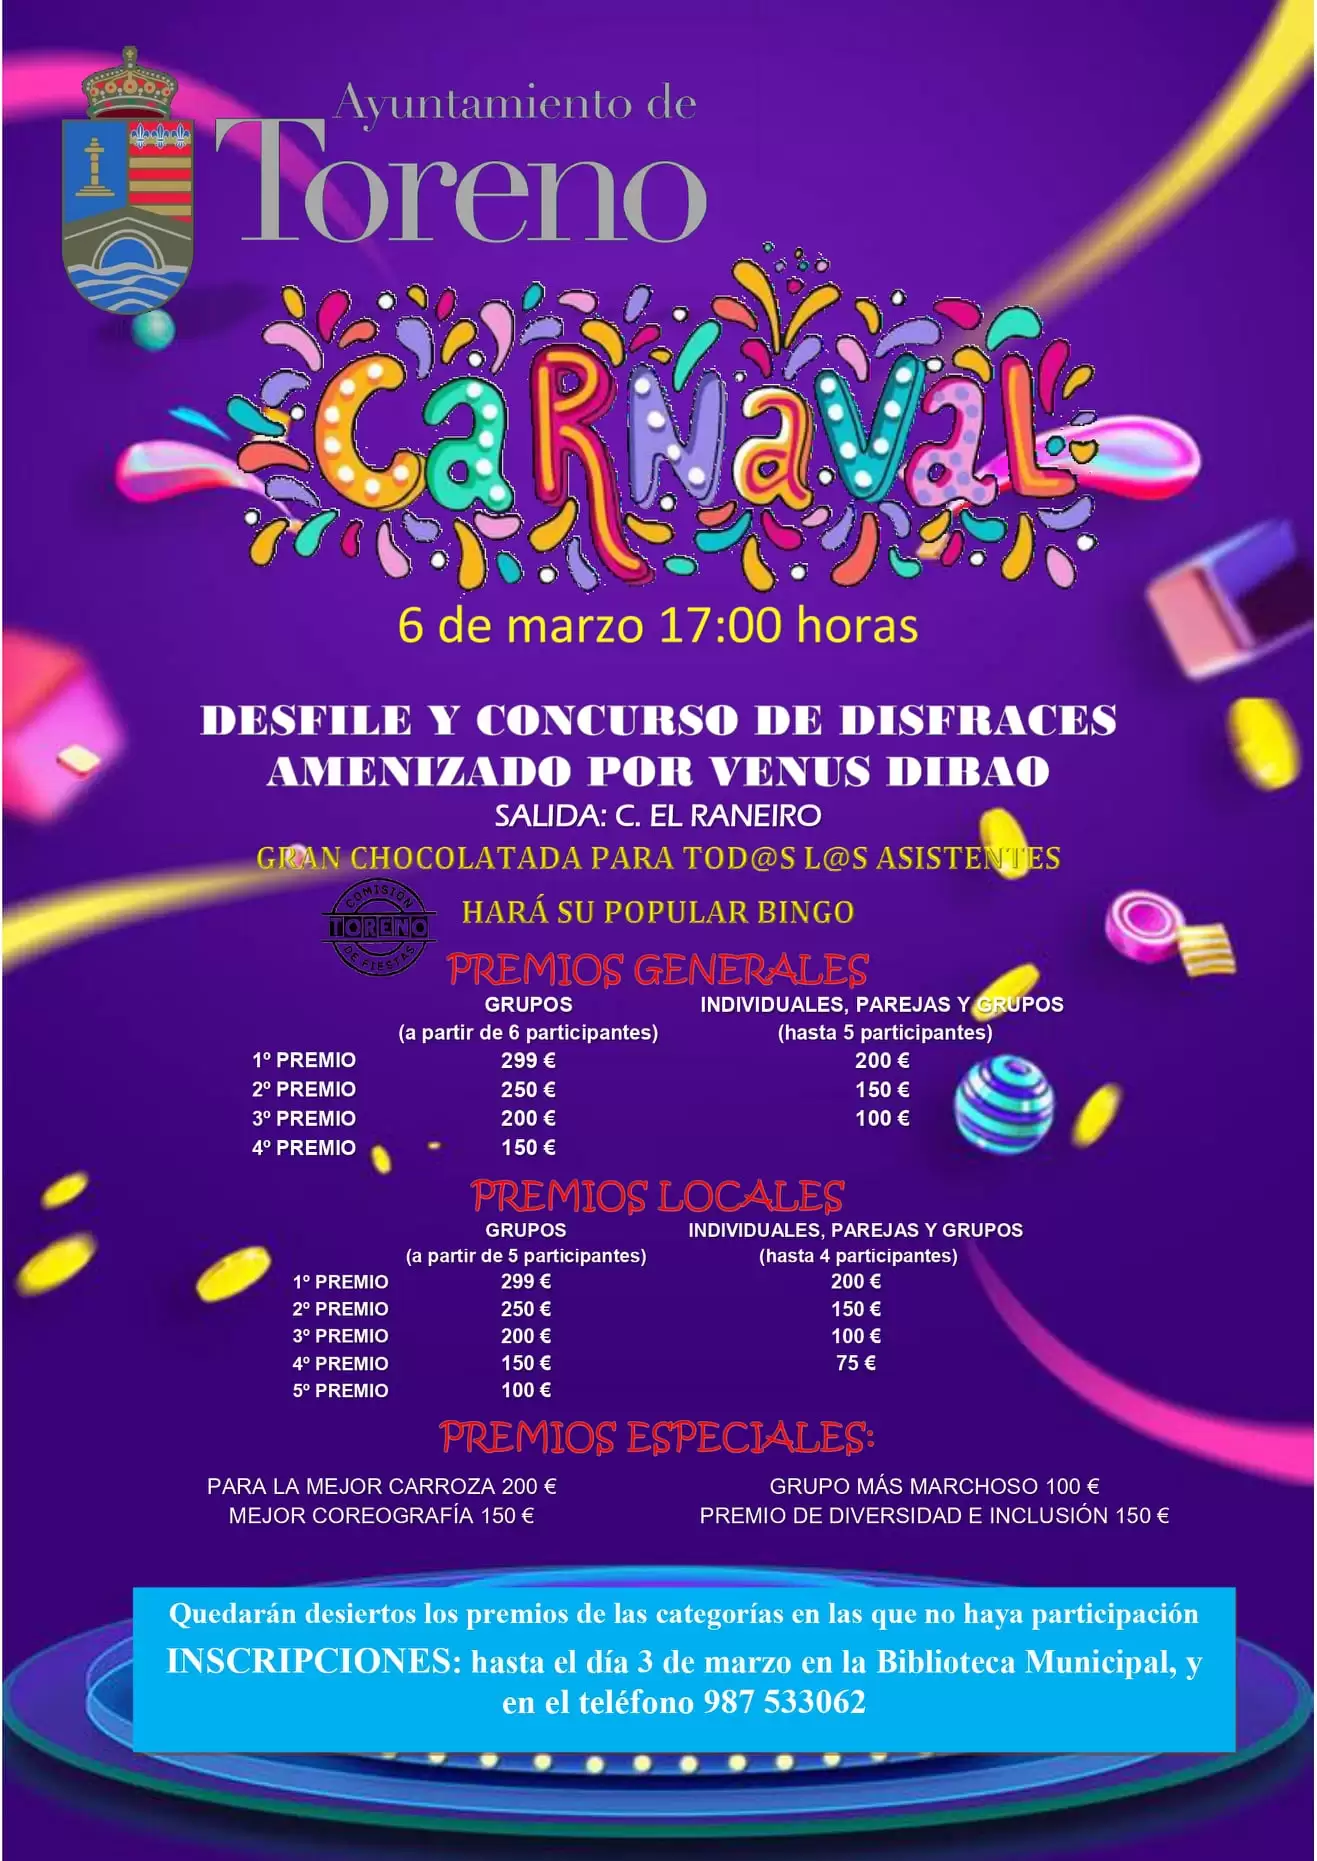 Carnaval en el Bierzo. Todas las fechas y horarios para que no te pierdas nada 260